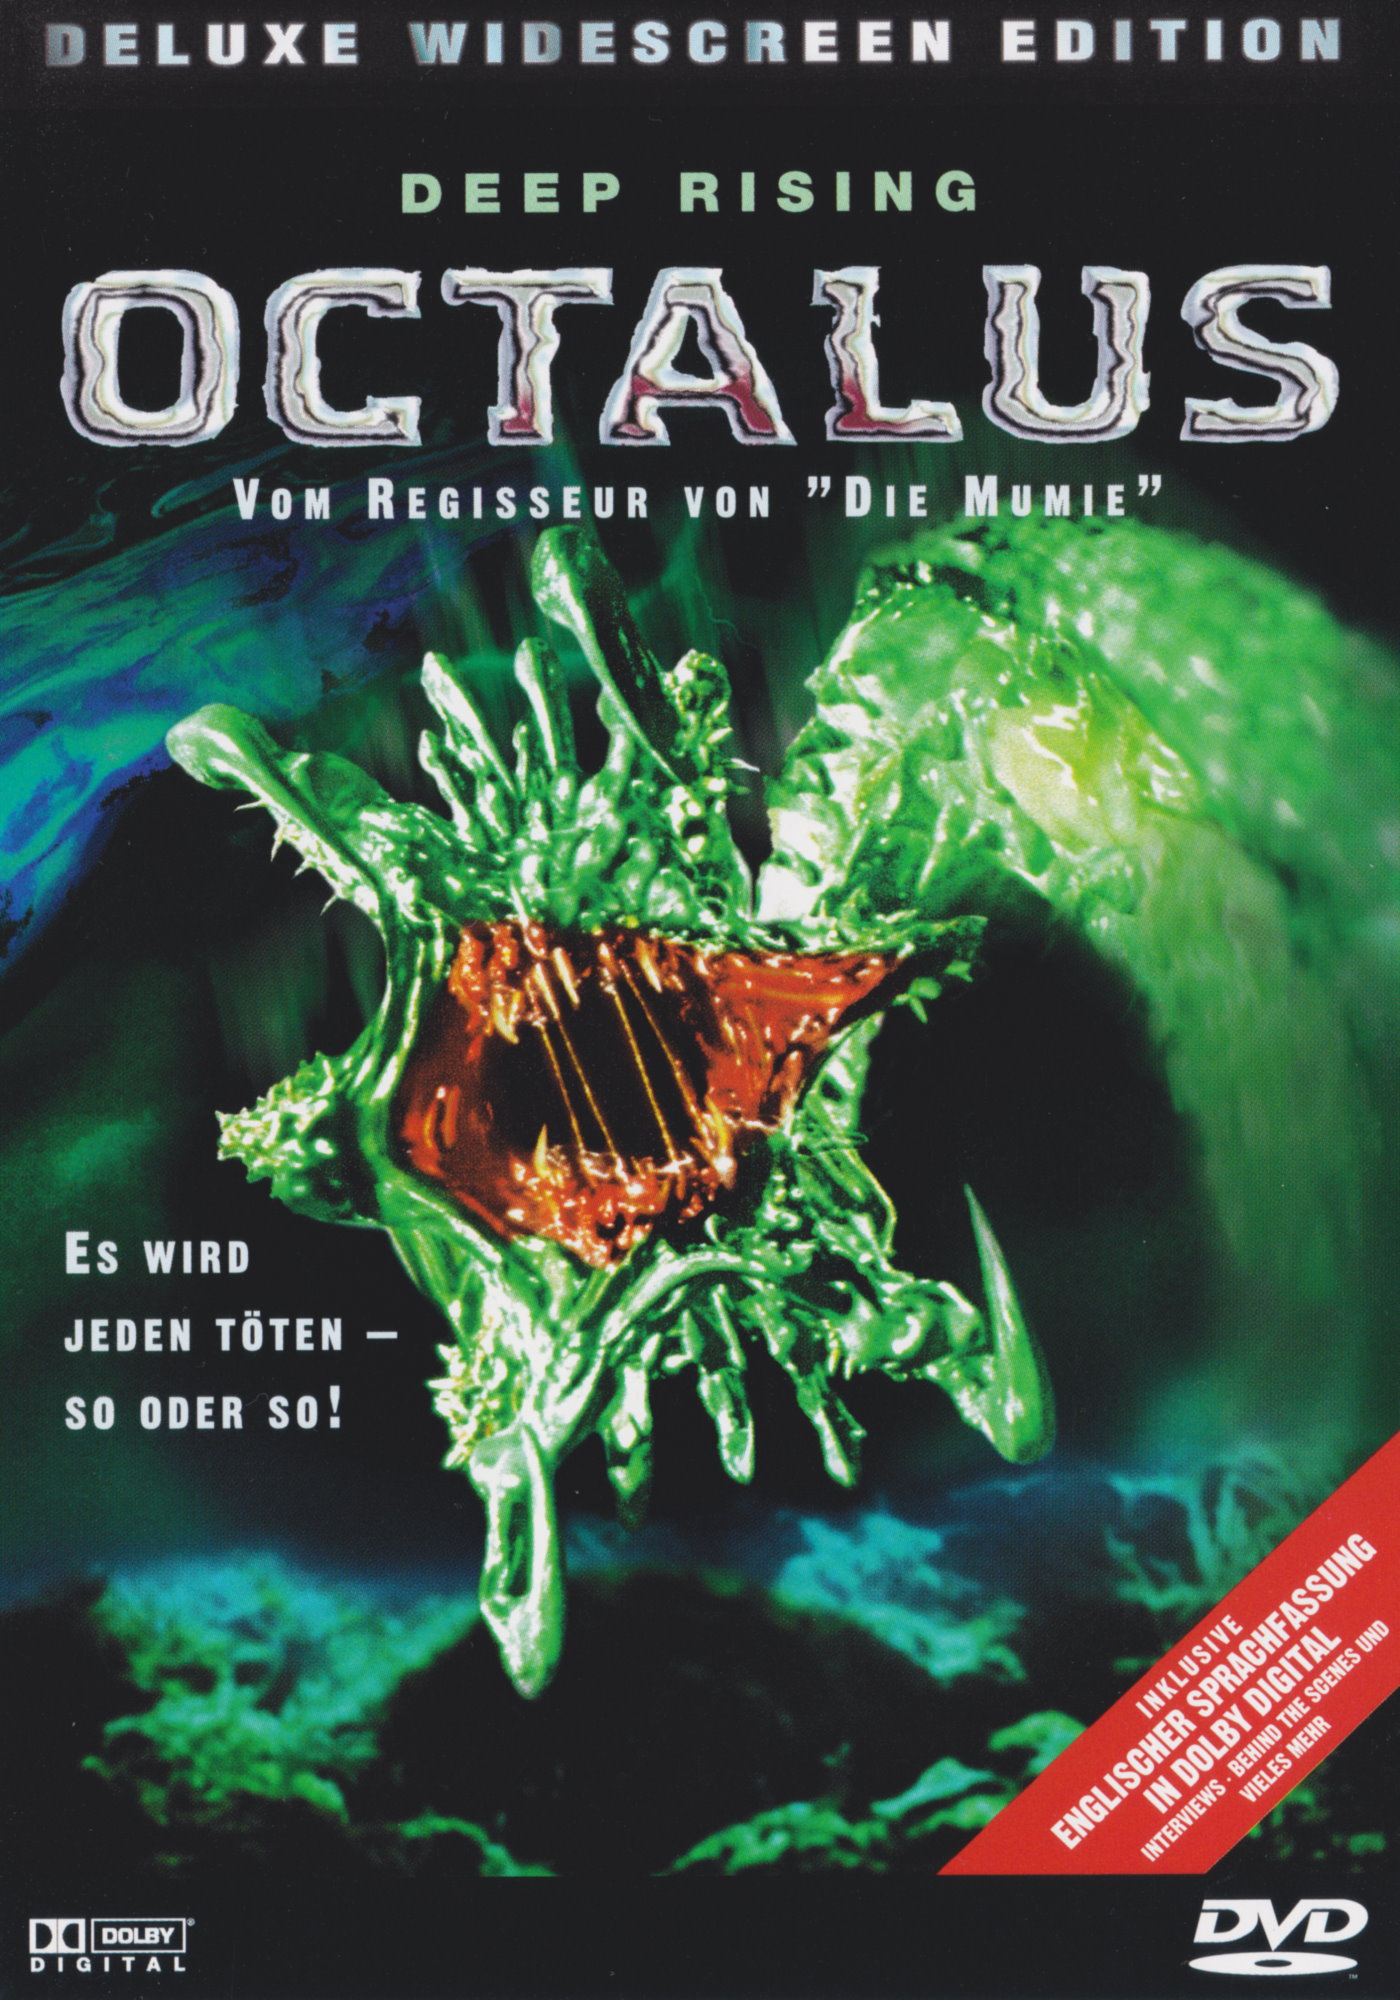 Cover - Octalus - Der Tod aus der Tiefe.jpg